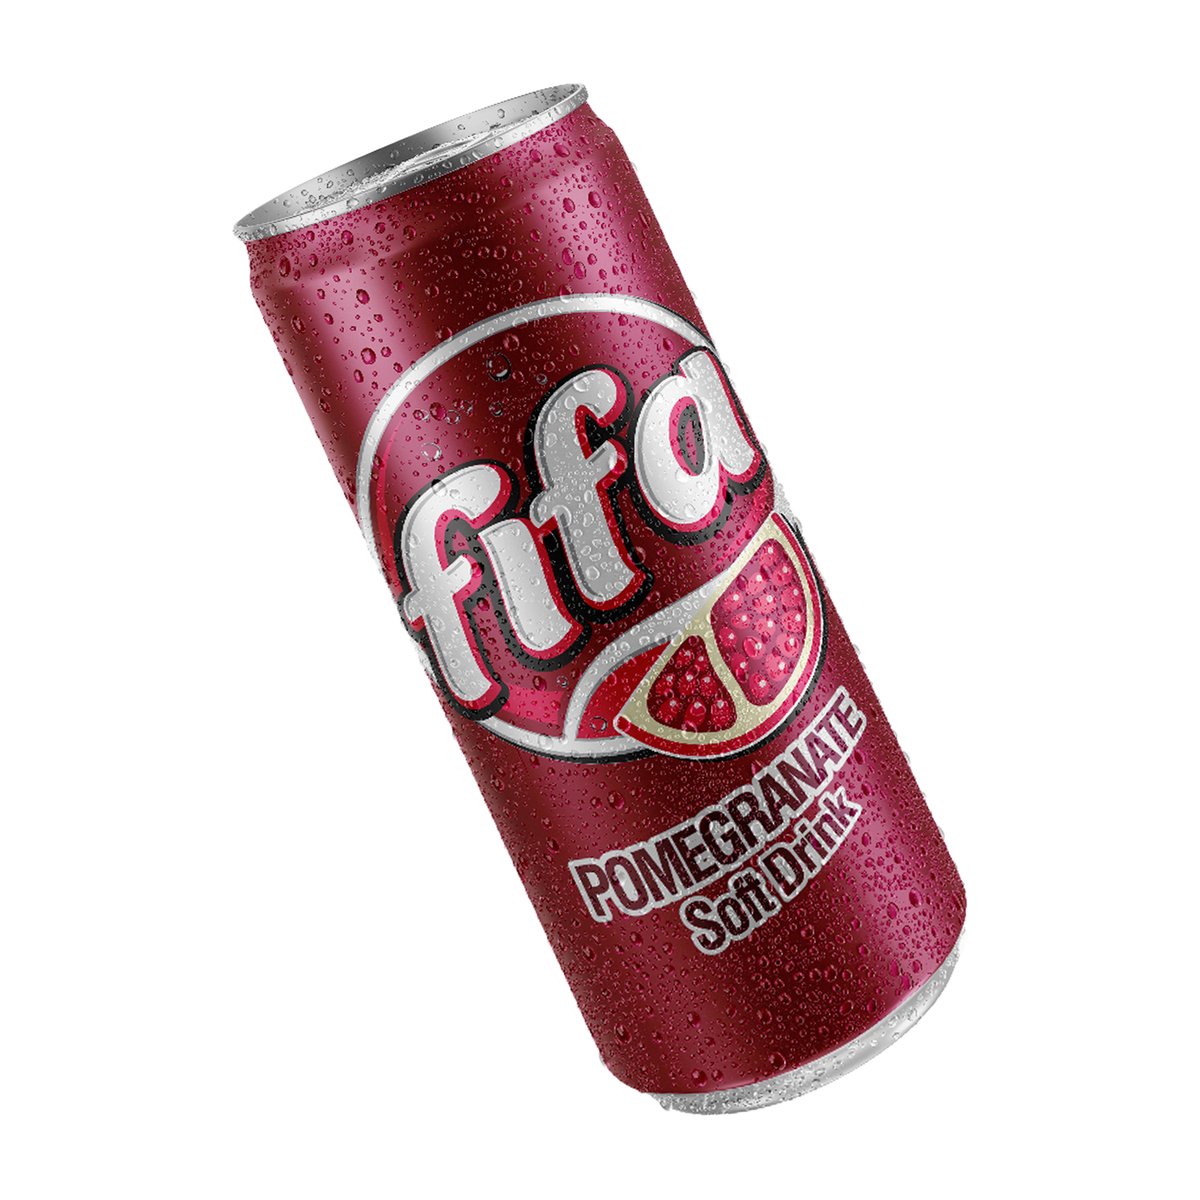 Fifa Pomegranate Soft Drink 30 x 250 ml